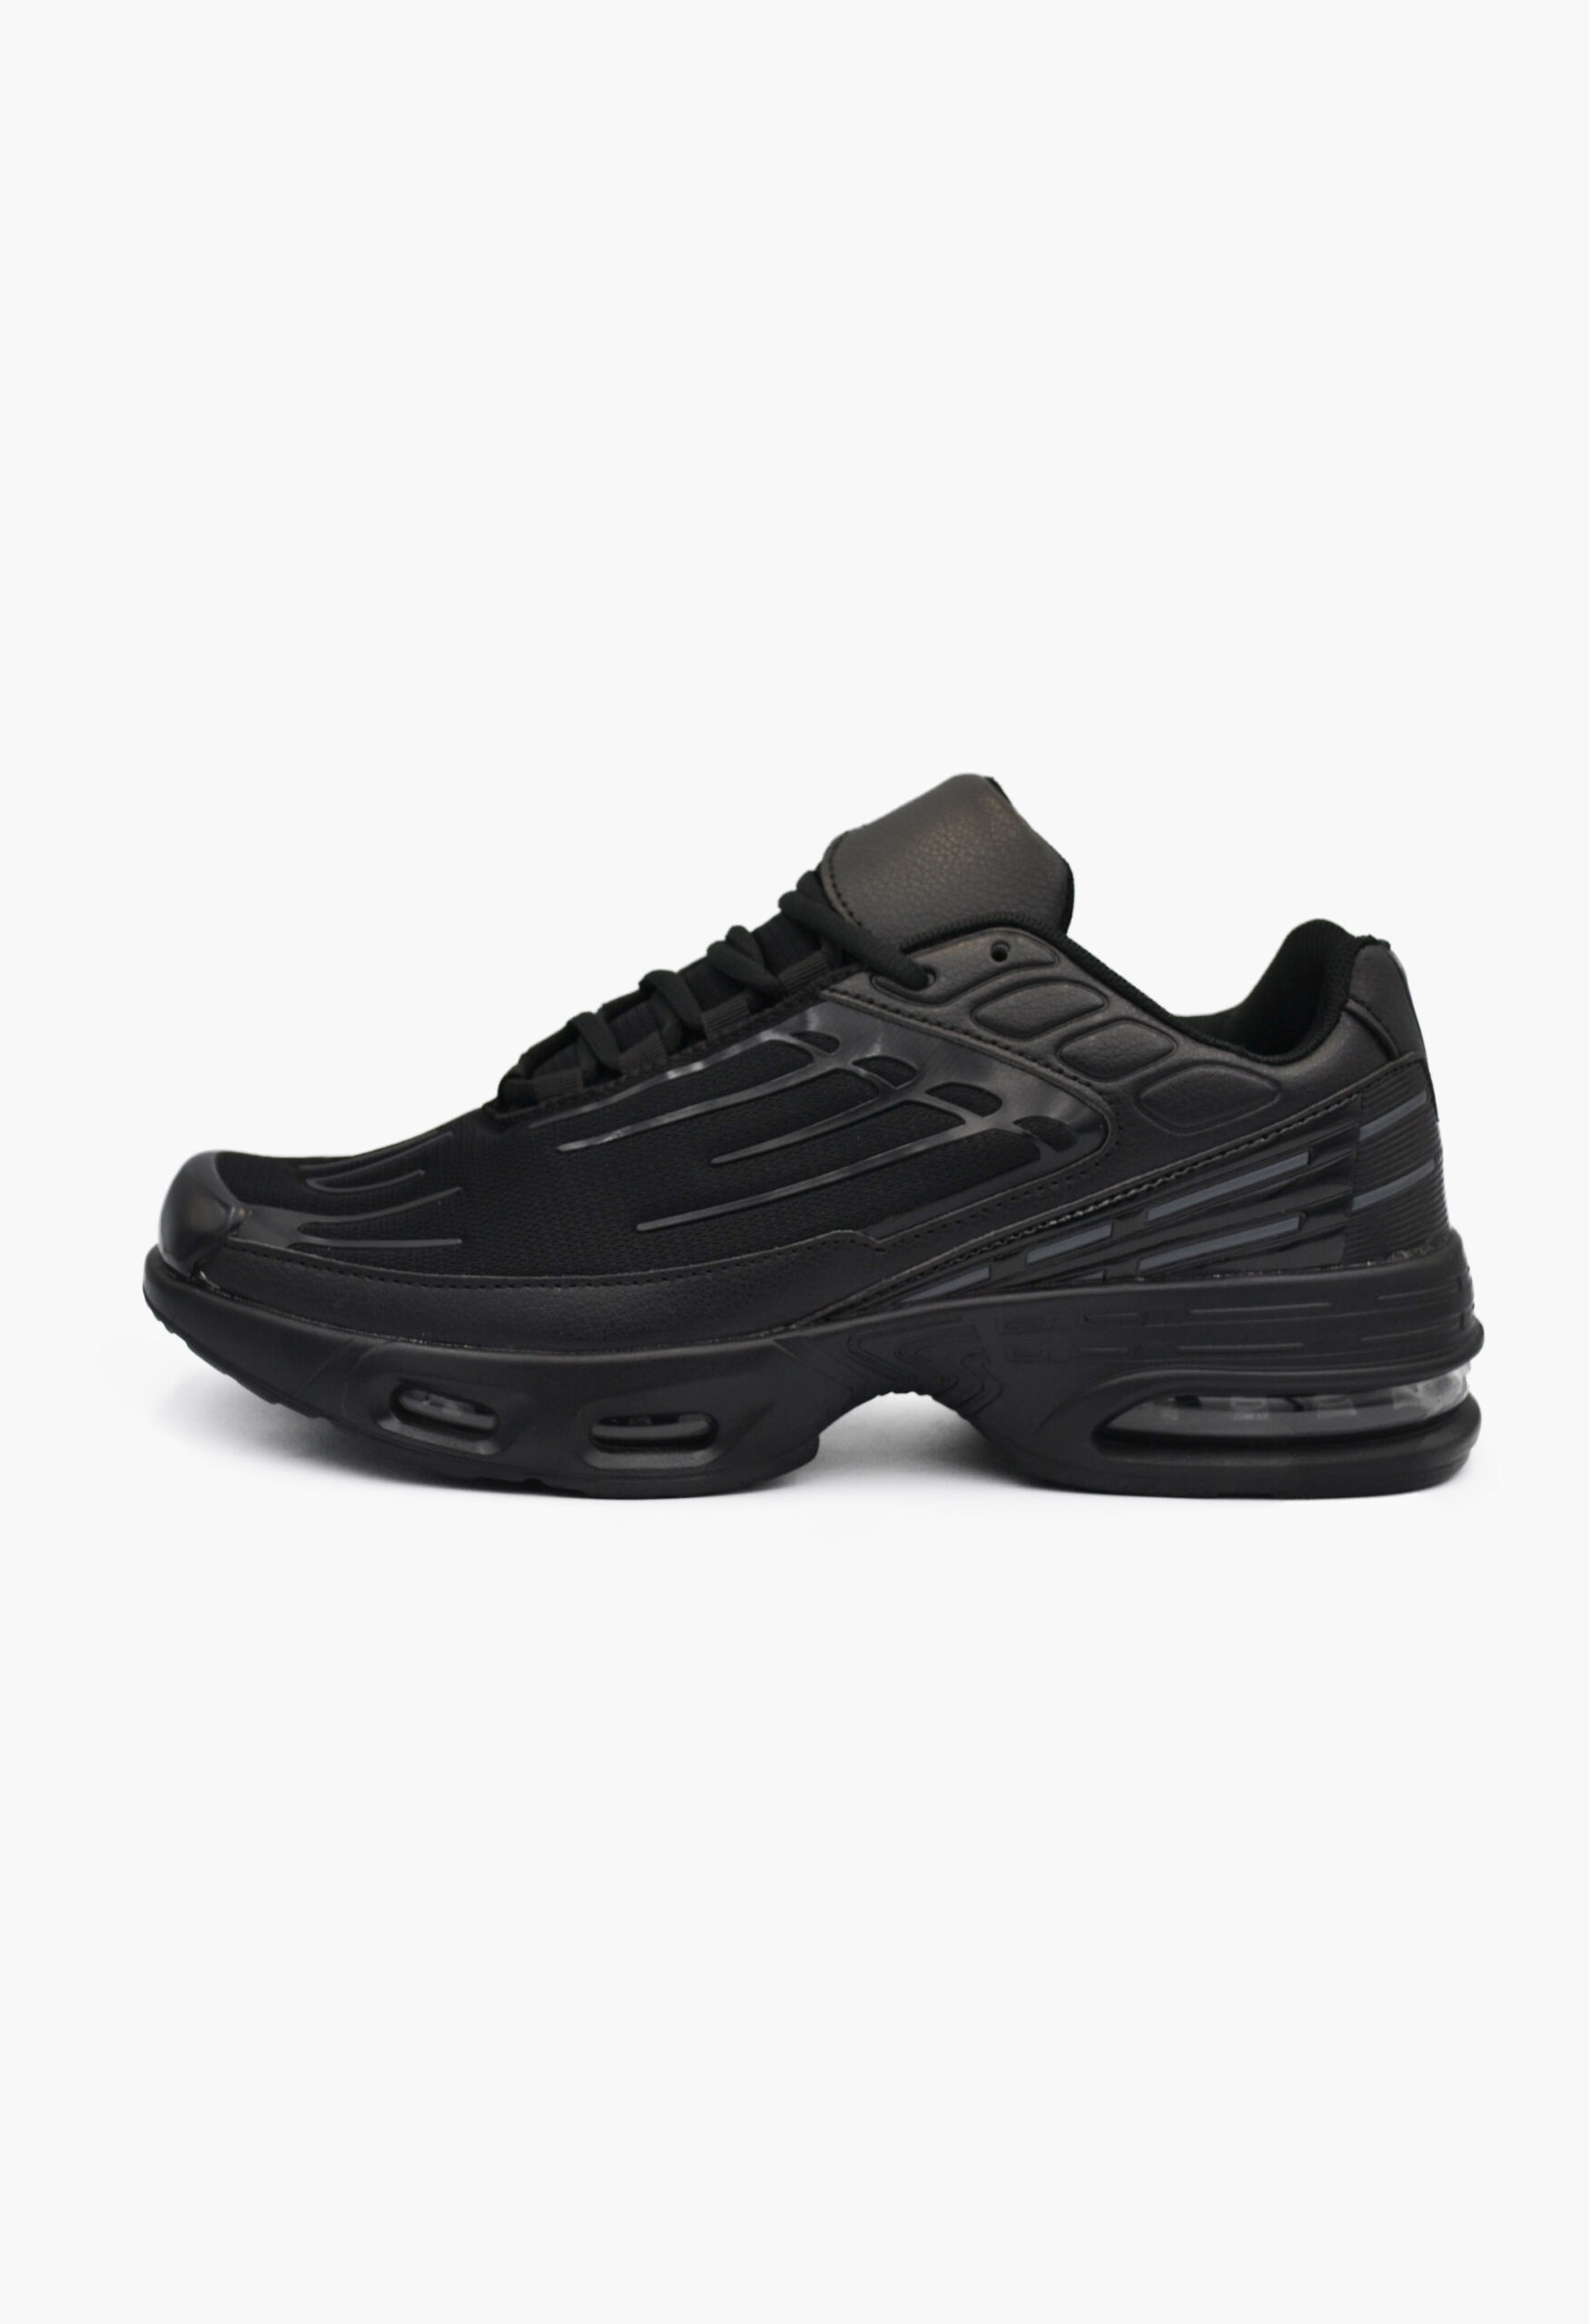 Ανδρικά Αθλητικά Παπούτσια για Τρέξιμο Μαύρα / TN505-black ΑΘΛΗΤΙΚΑ & SNEAKERS joya.gr